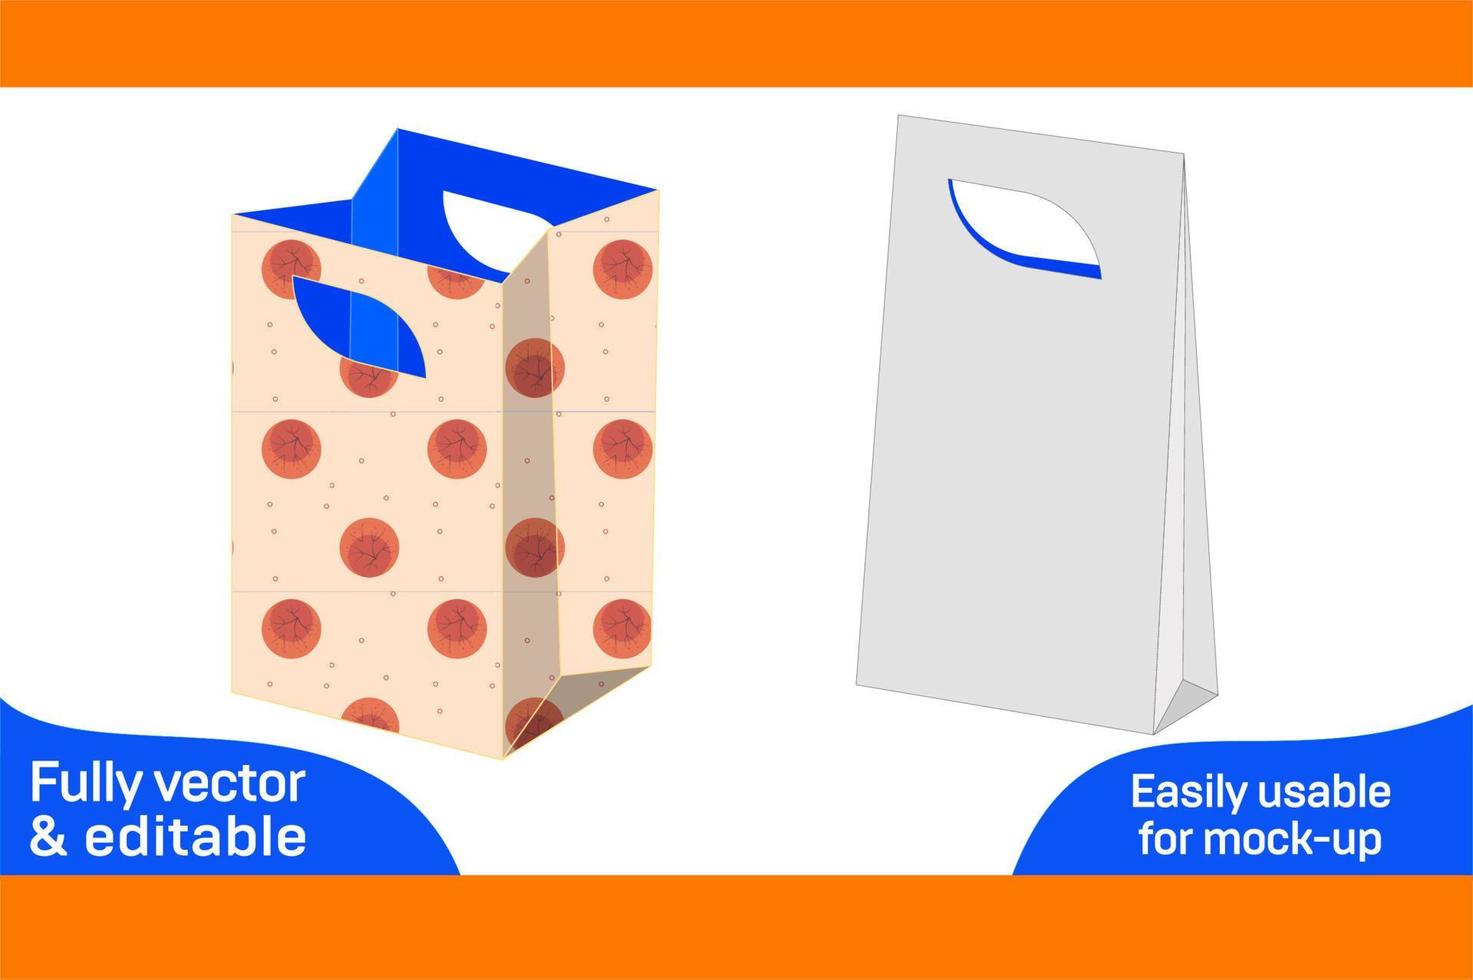 boodschappen doen zak of verrassing geschenk doos dieline sjabloon, 3d doos kleur veranderlijk en bewerkbare 3d doos vector